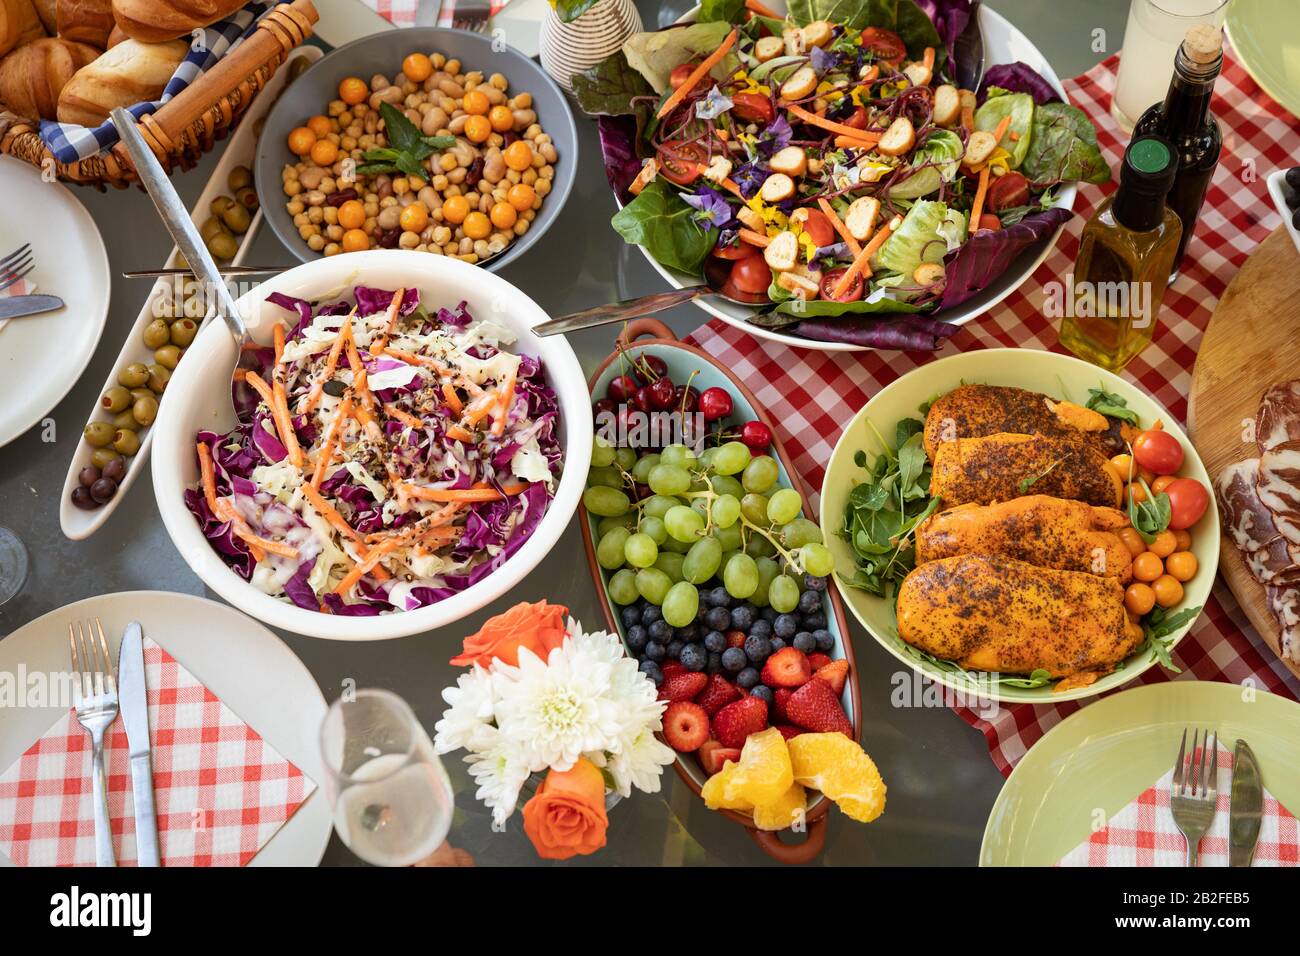 Blick über die Schüsseln mit Sommersalaten, gekochtem Fleisch und Obst, bereit zum Essen auf einem Tisch im Freien mit einem roten Gigham-Tischtuch, dekoriert mit Blumen. Stockfoto